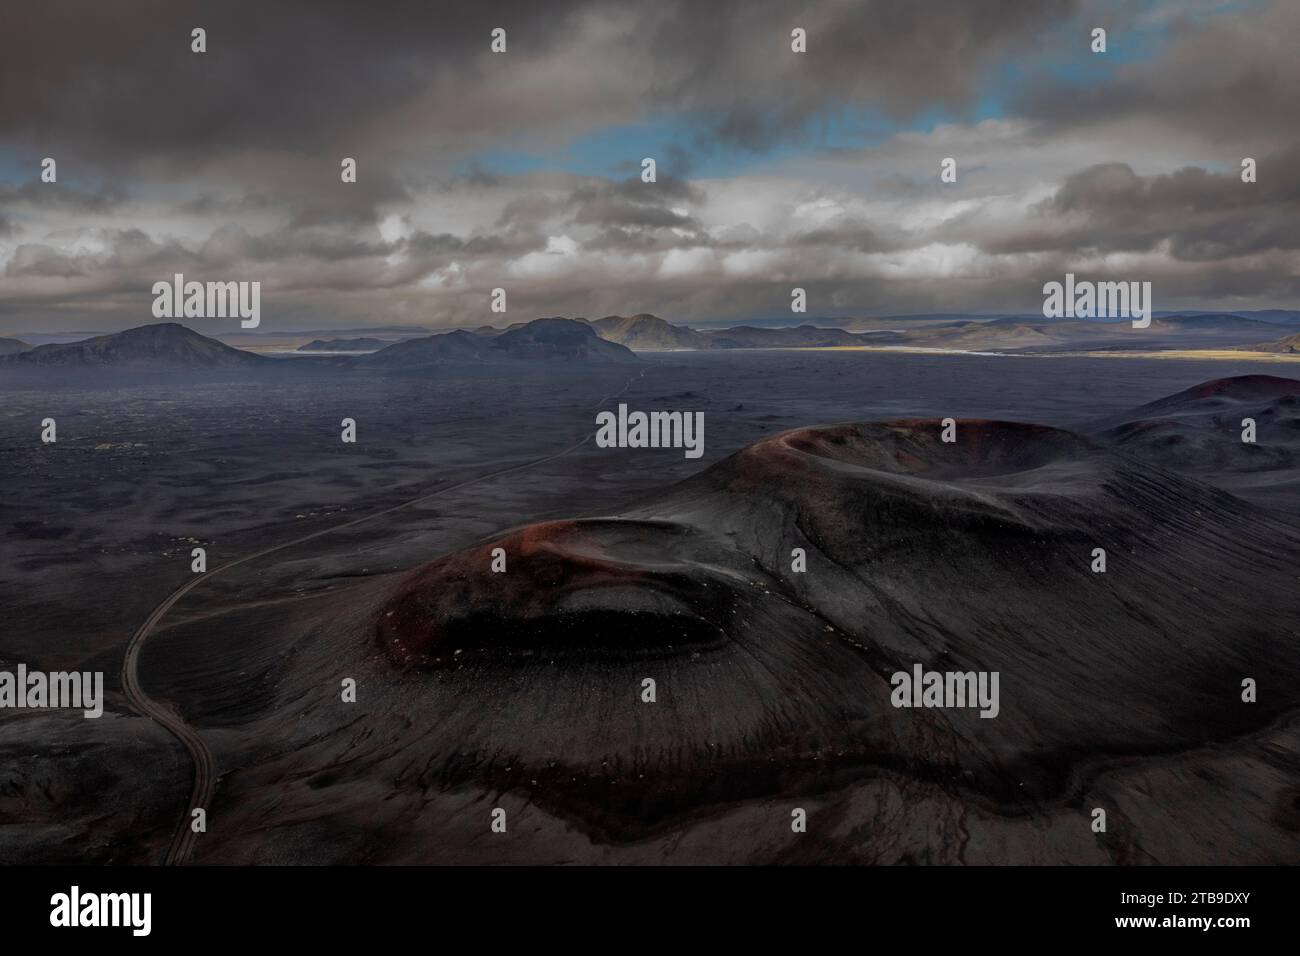 Urzeitliche Vulkanlandschaft in der Nähe von Landmannalaugar, Islande Banque D'Images